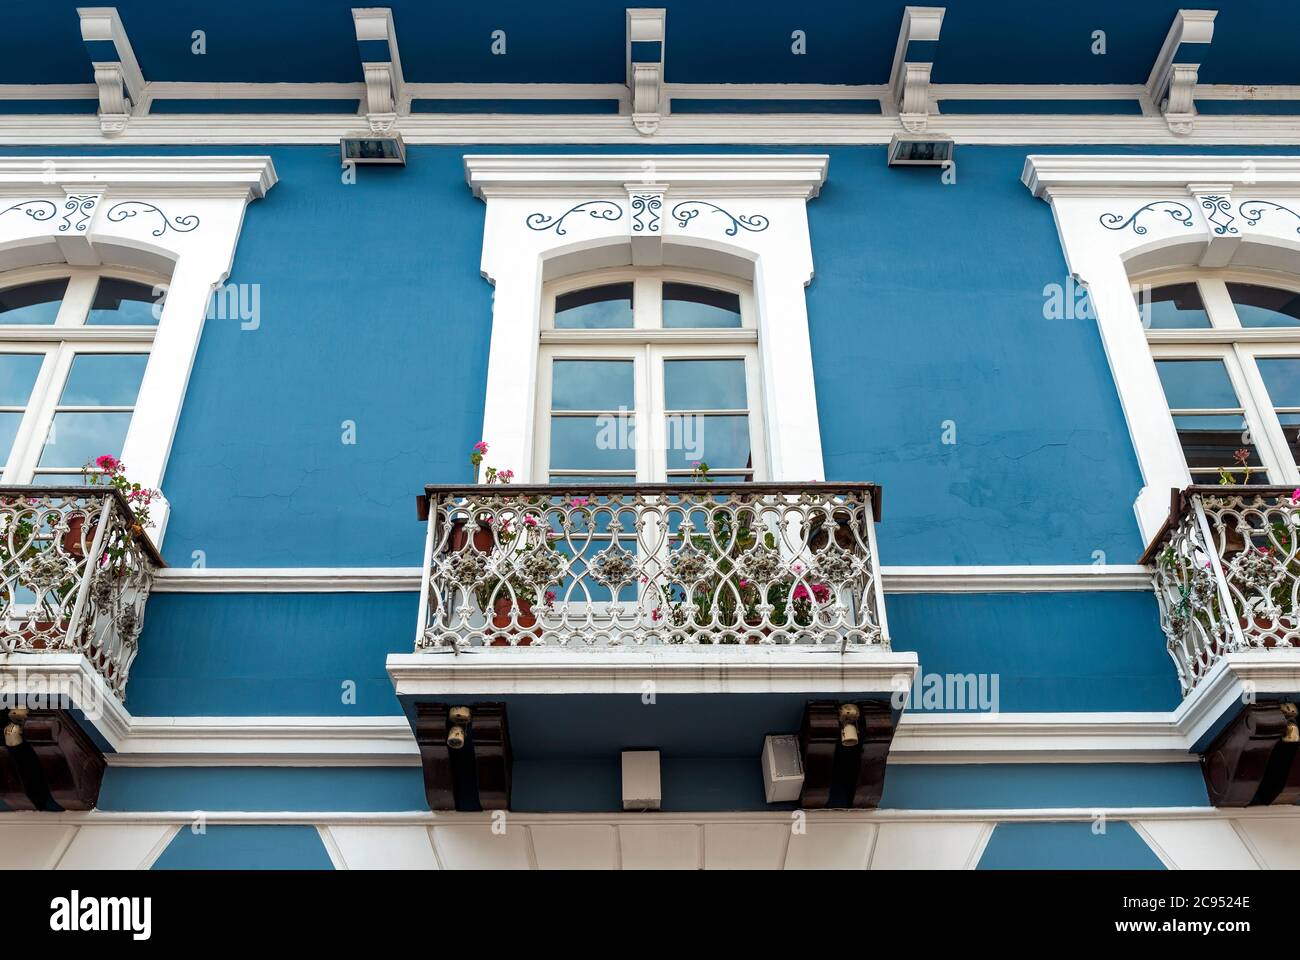 Architecture de style colonial avec façade bleue et blanche et balcon, Quito, Equateur. Banque D'Images